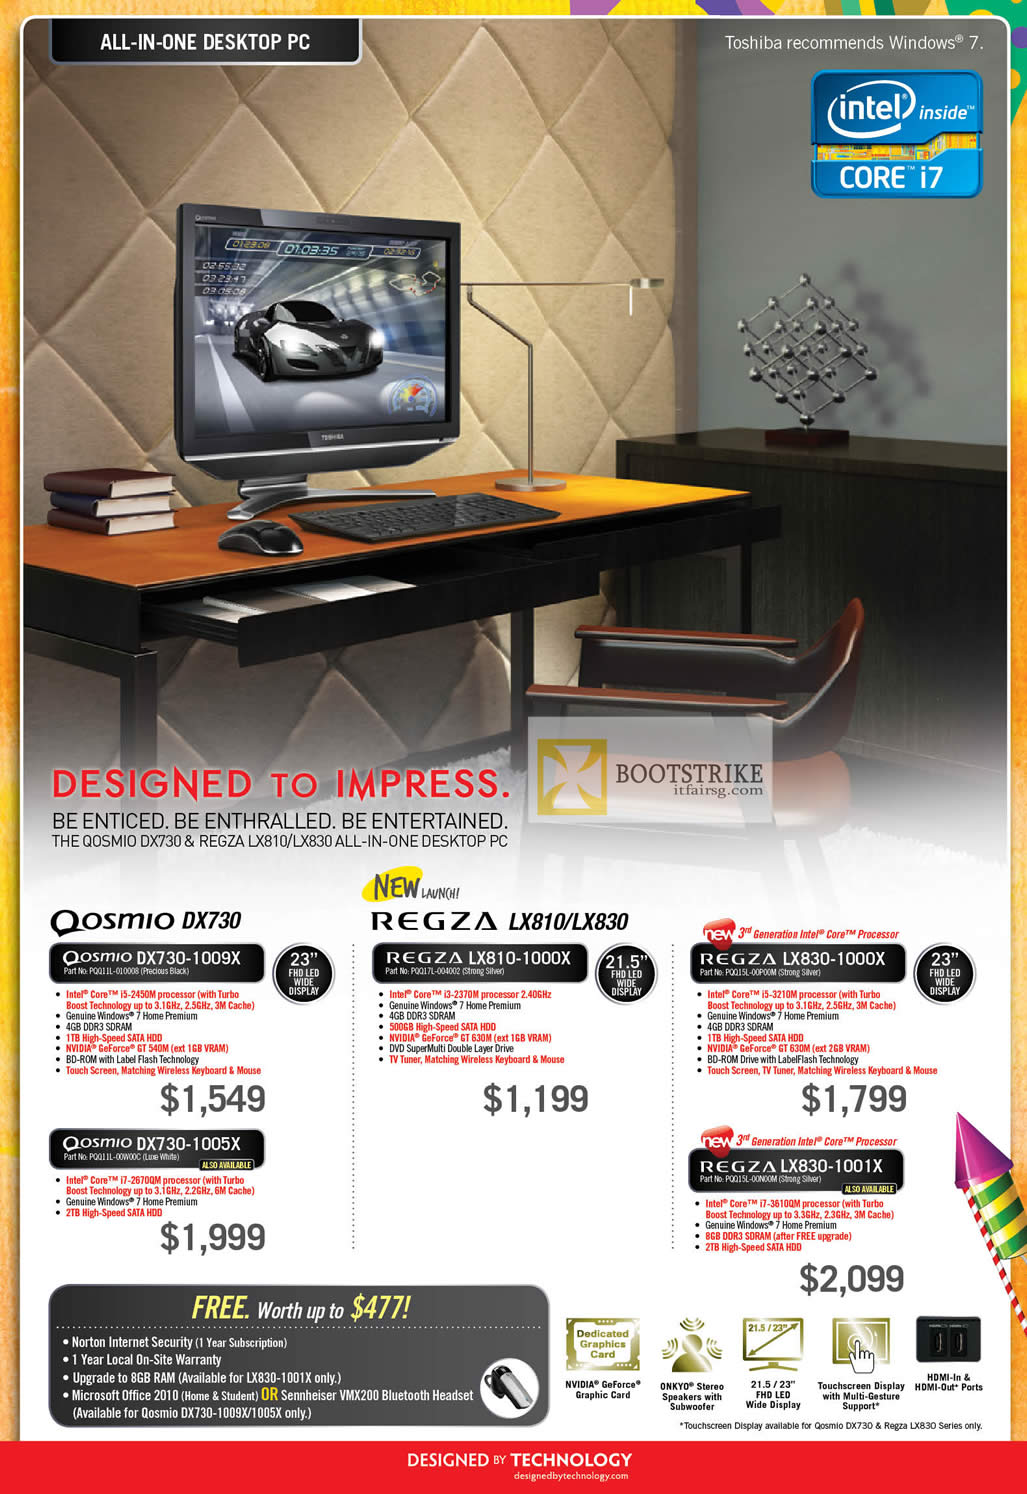 PC SHOW 2012 price list image brochure of Toshiba Notebooks Qosmio DX730-1009X, DX730-1005X, Regza LX810-1000X, LX830-1000X, LX830-1001X